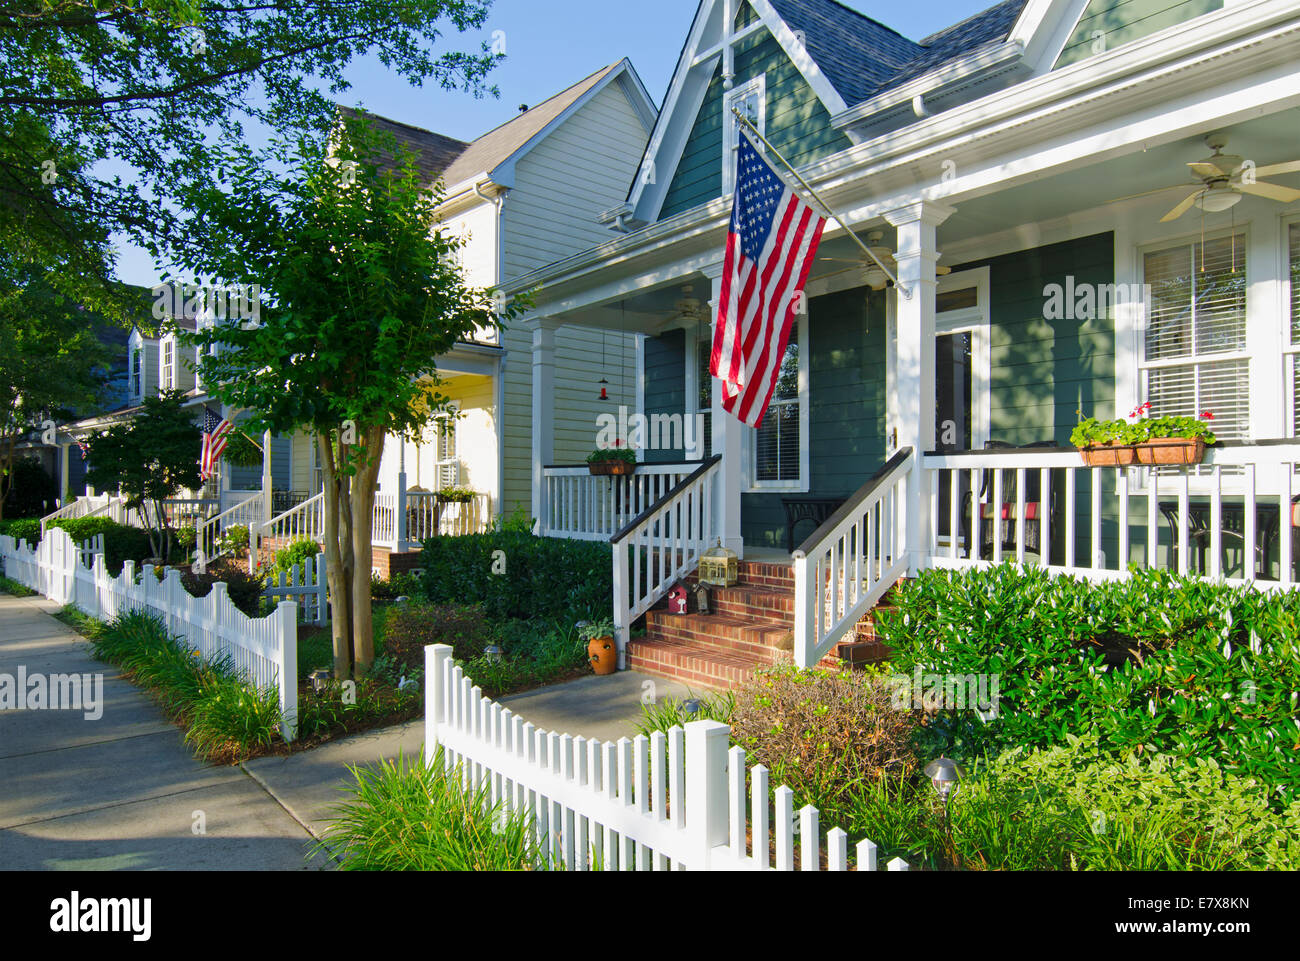 Der amerikanische Traum von einem Haus mit einer Fahne und einer weißen Lattenzaun im Vorgarten erwacht zum Leben in dieses ikonische Bild. Stockfoto